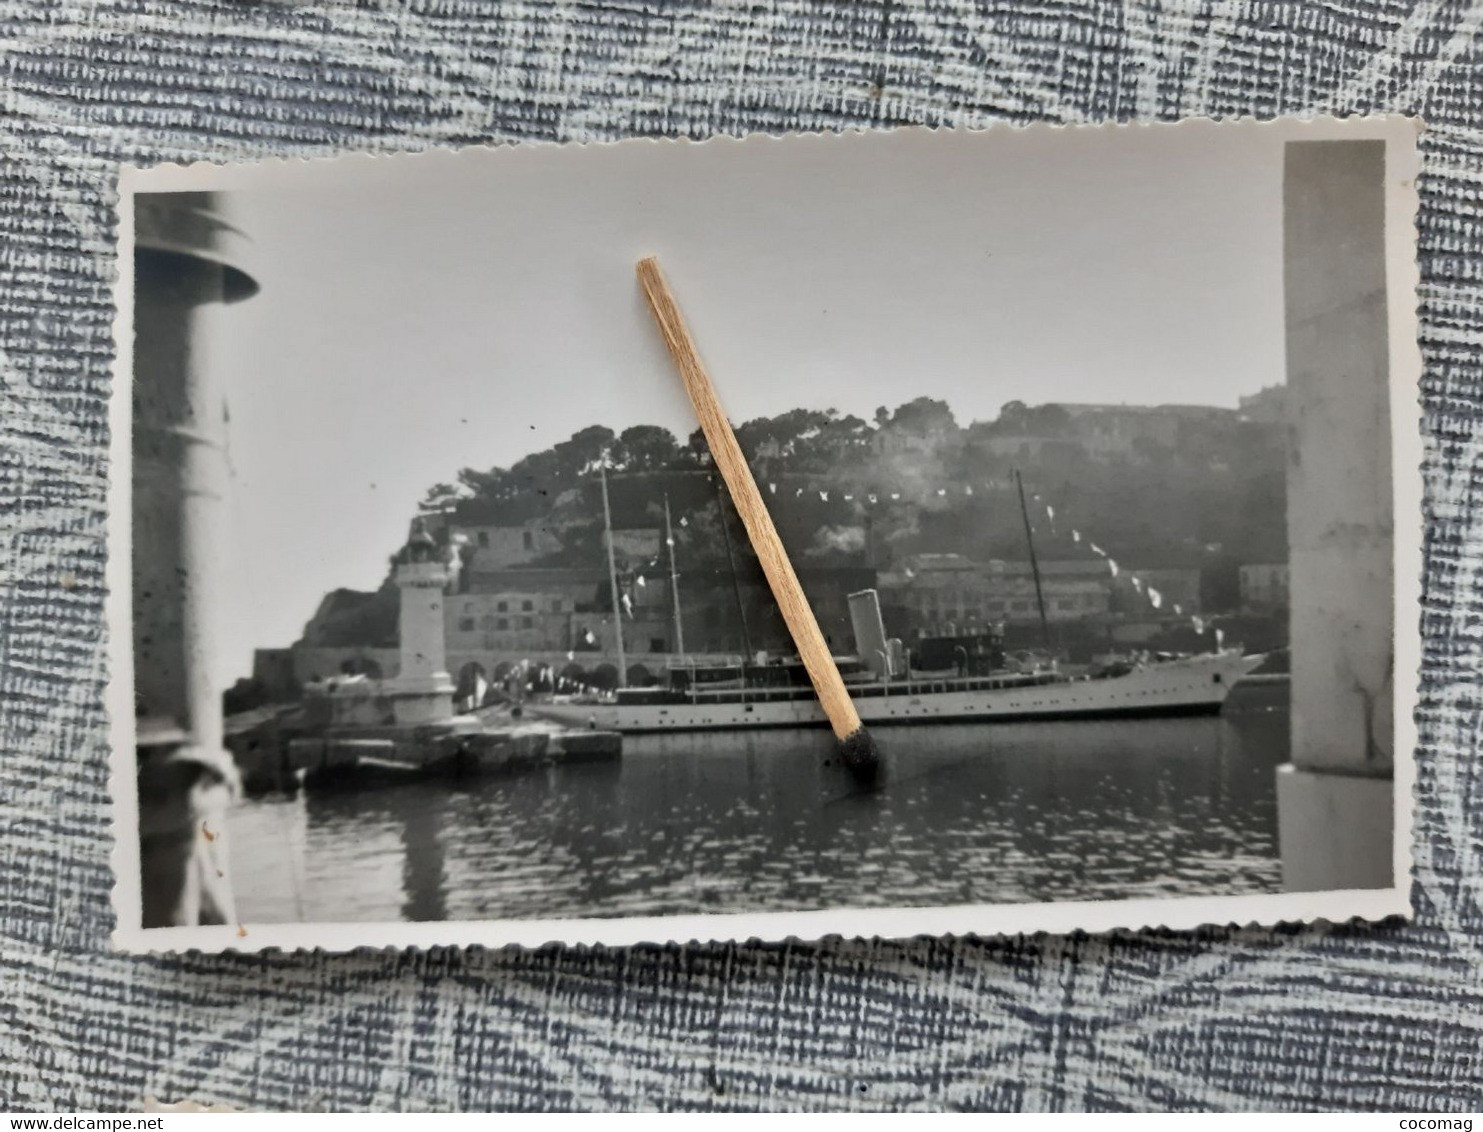 NAVIRE MILITAIRE FREGATE LA DECOUVERTE PHOTO 1948 NAVIRE YACHT  DANS LE PORT DE MONACO  11.5 X 7.2 CM - Barcos